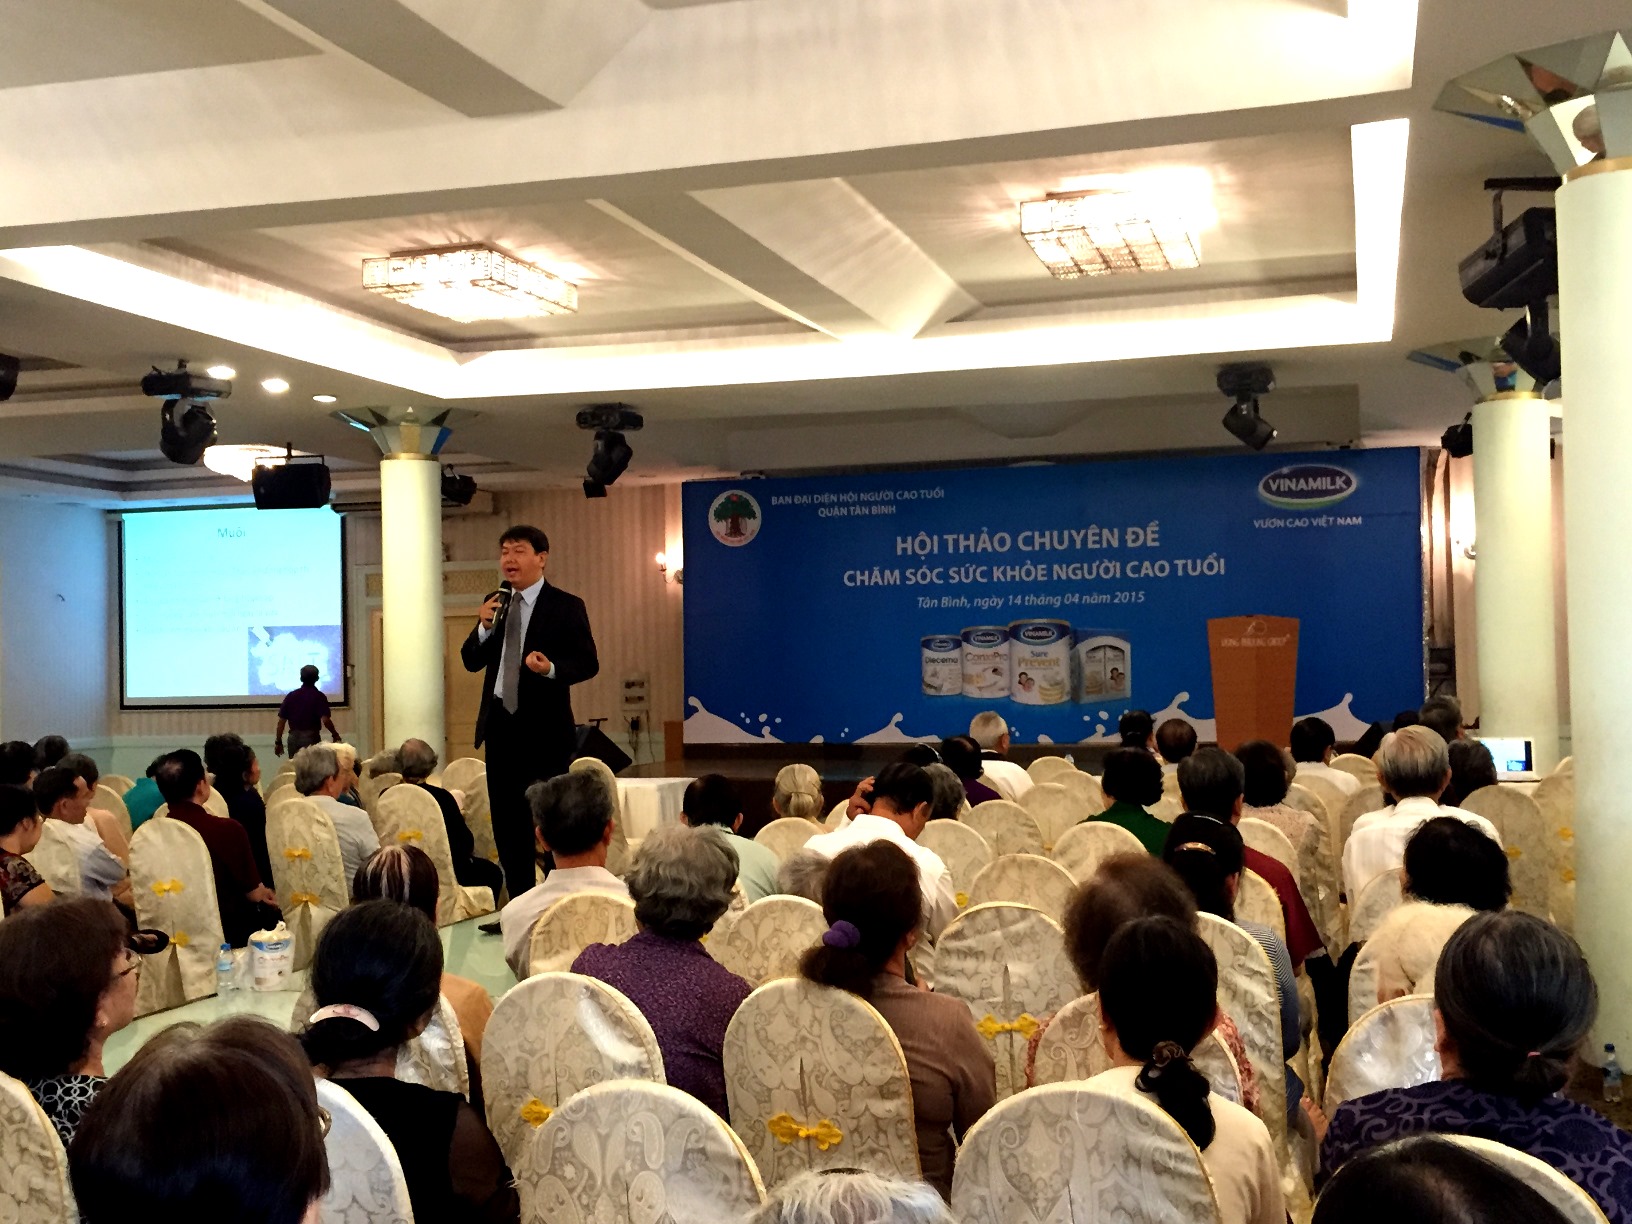 Tiến sĩ – Bác sĩ Nguyễn Anh Tuấn, Đại học Y Dược TP.HCM chia sẻ thông tin “Dinh dưỡng ở người cao tuổi tại hội thảo ở TP.HCM